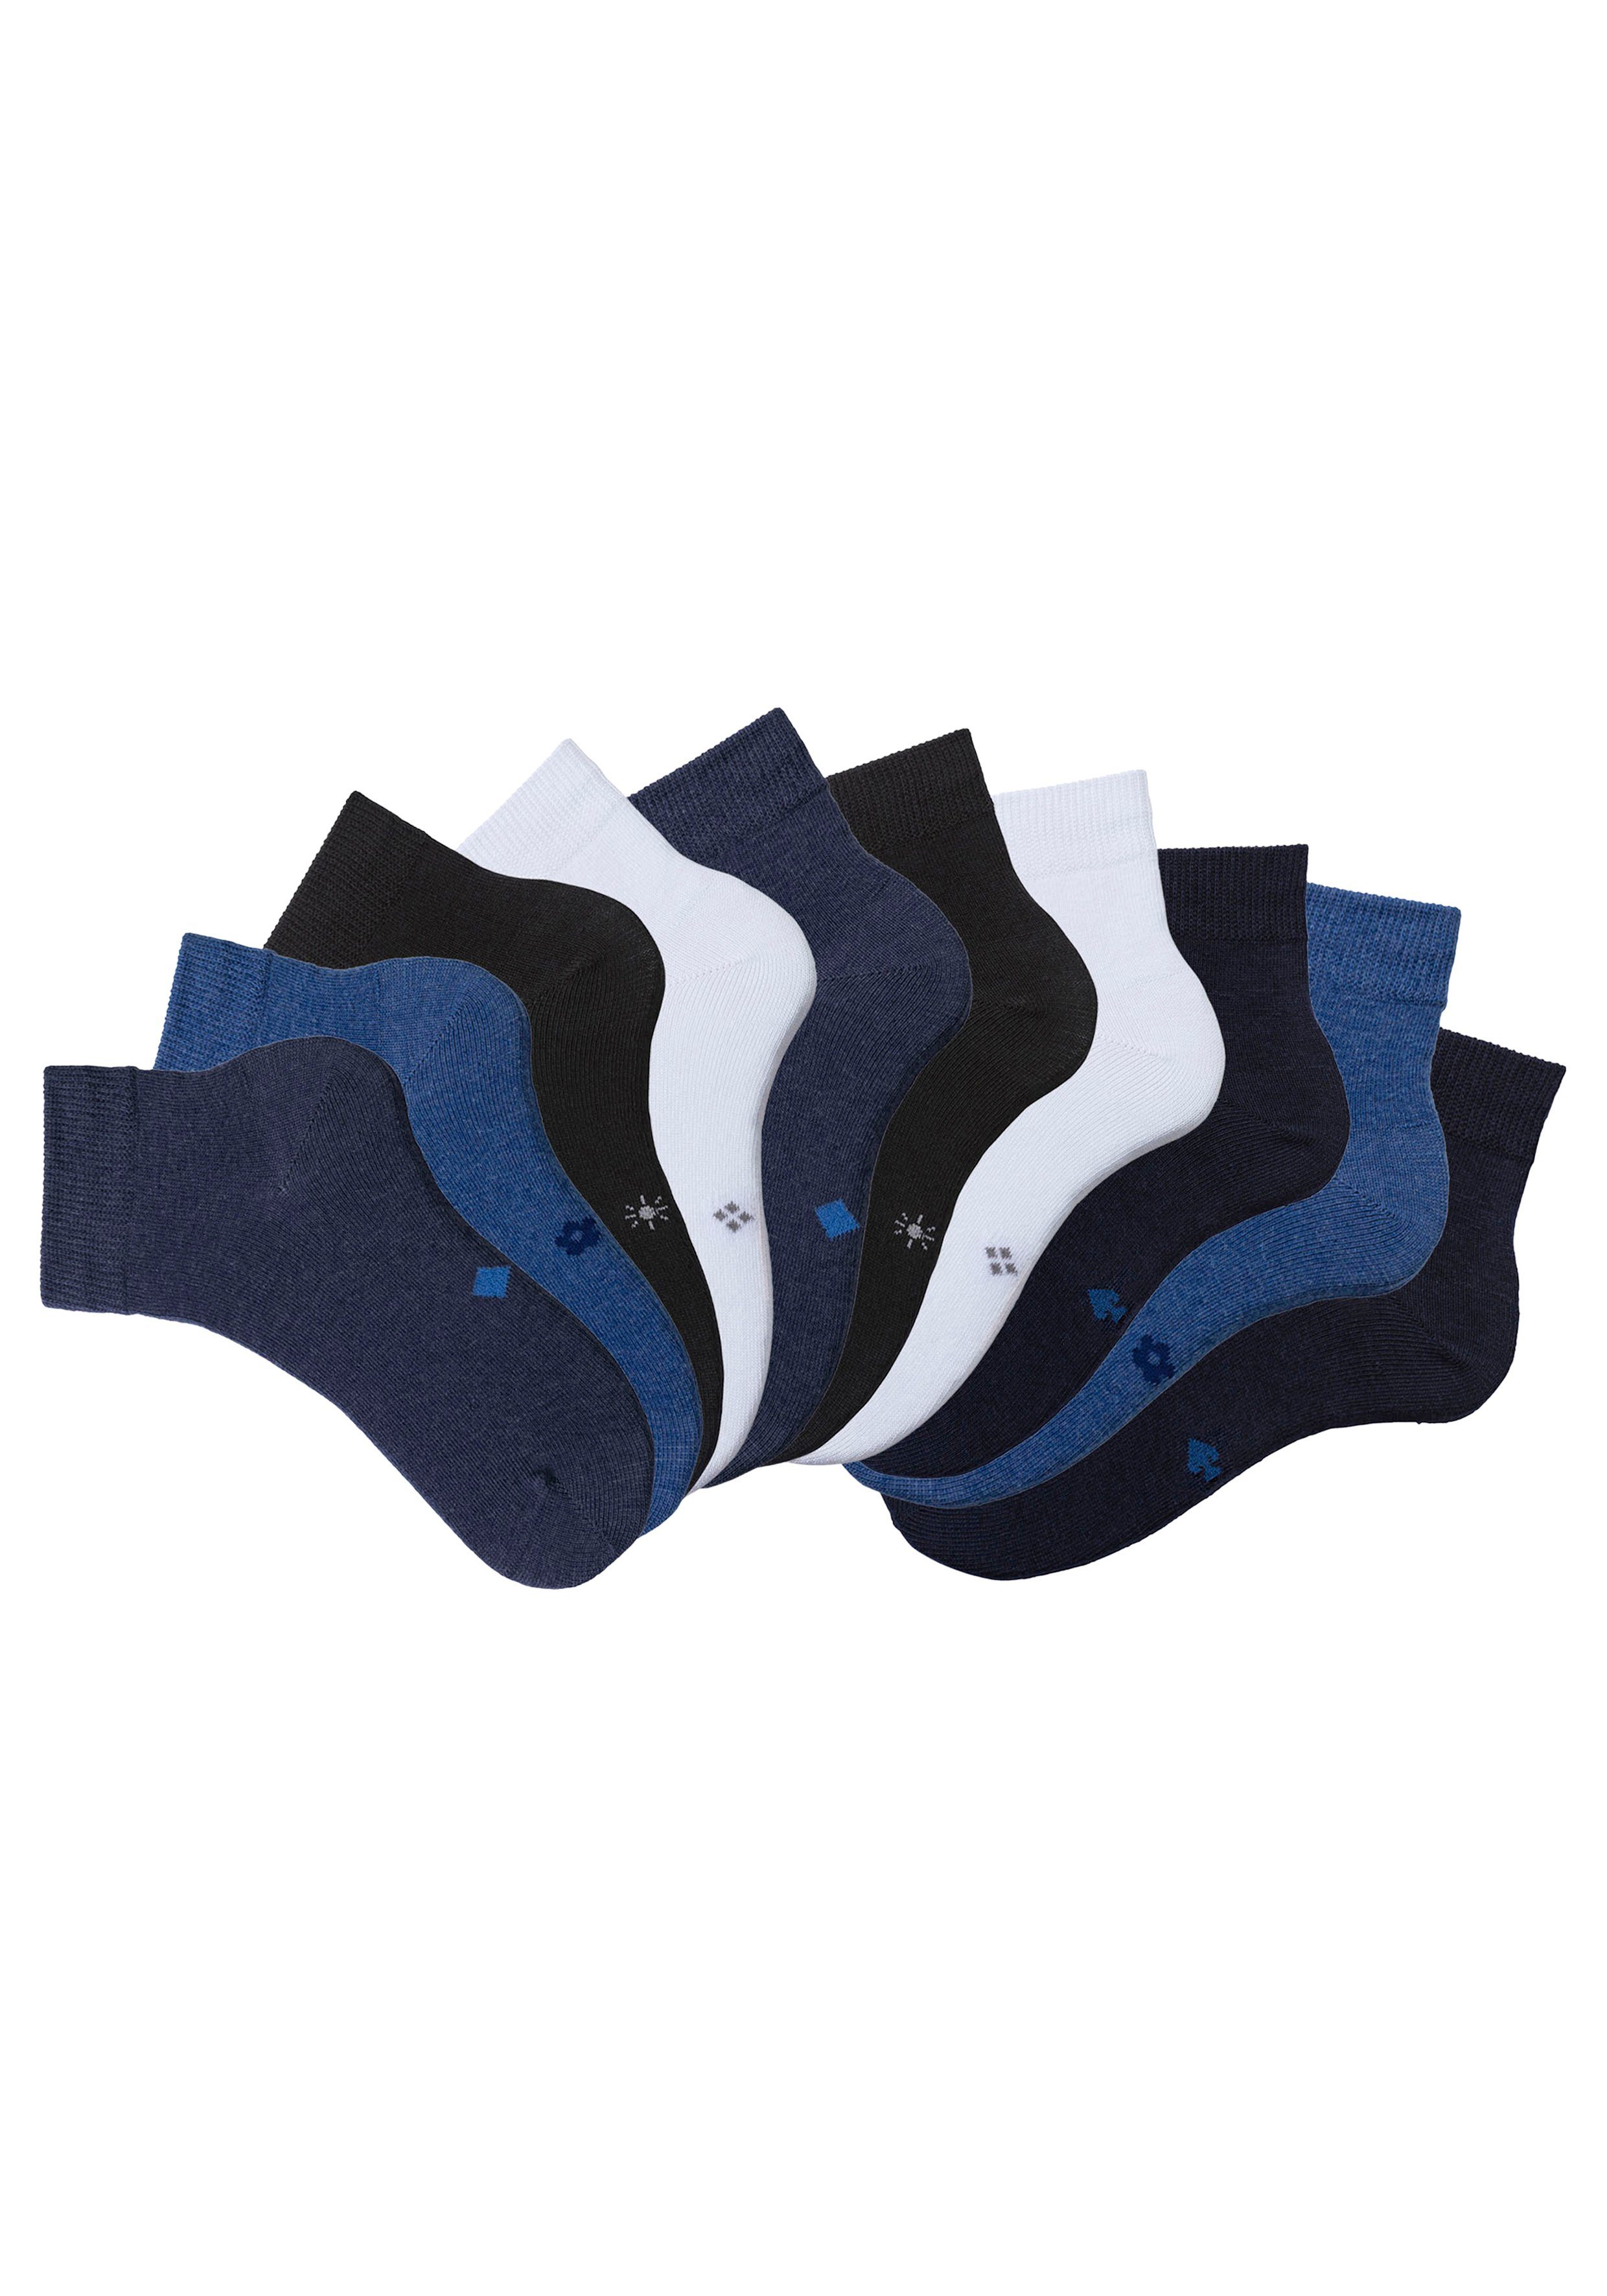 Kurzsocken 2x 2x 2x 10-Paar) schwarz, 2x blau blau, jeans 2x mit (Packung, meliert, eingestrickten H.I.S Symbolen meliert, weiß